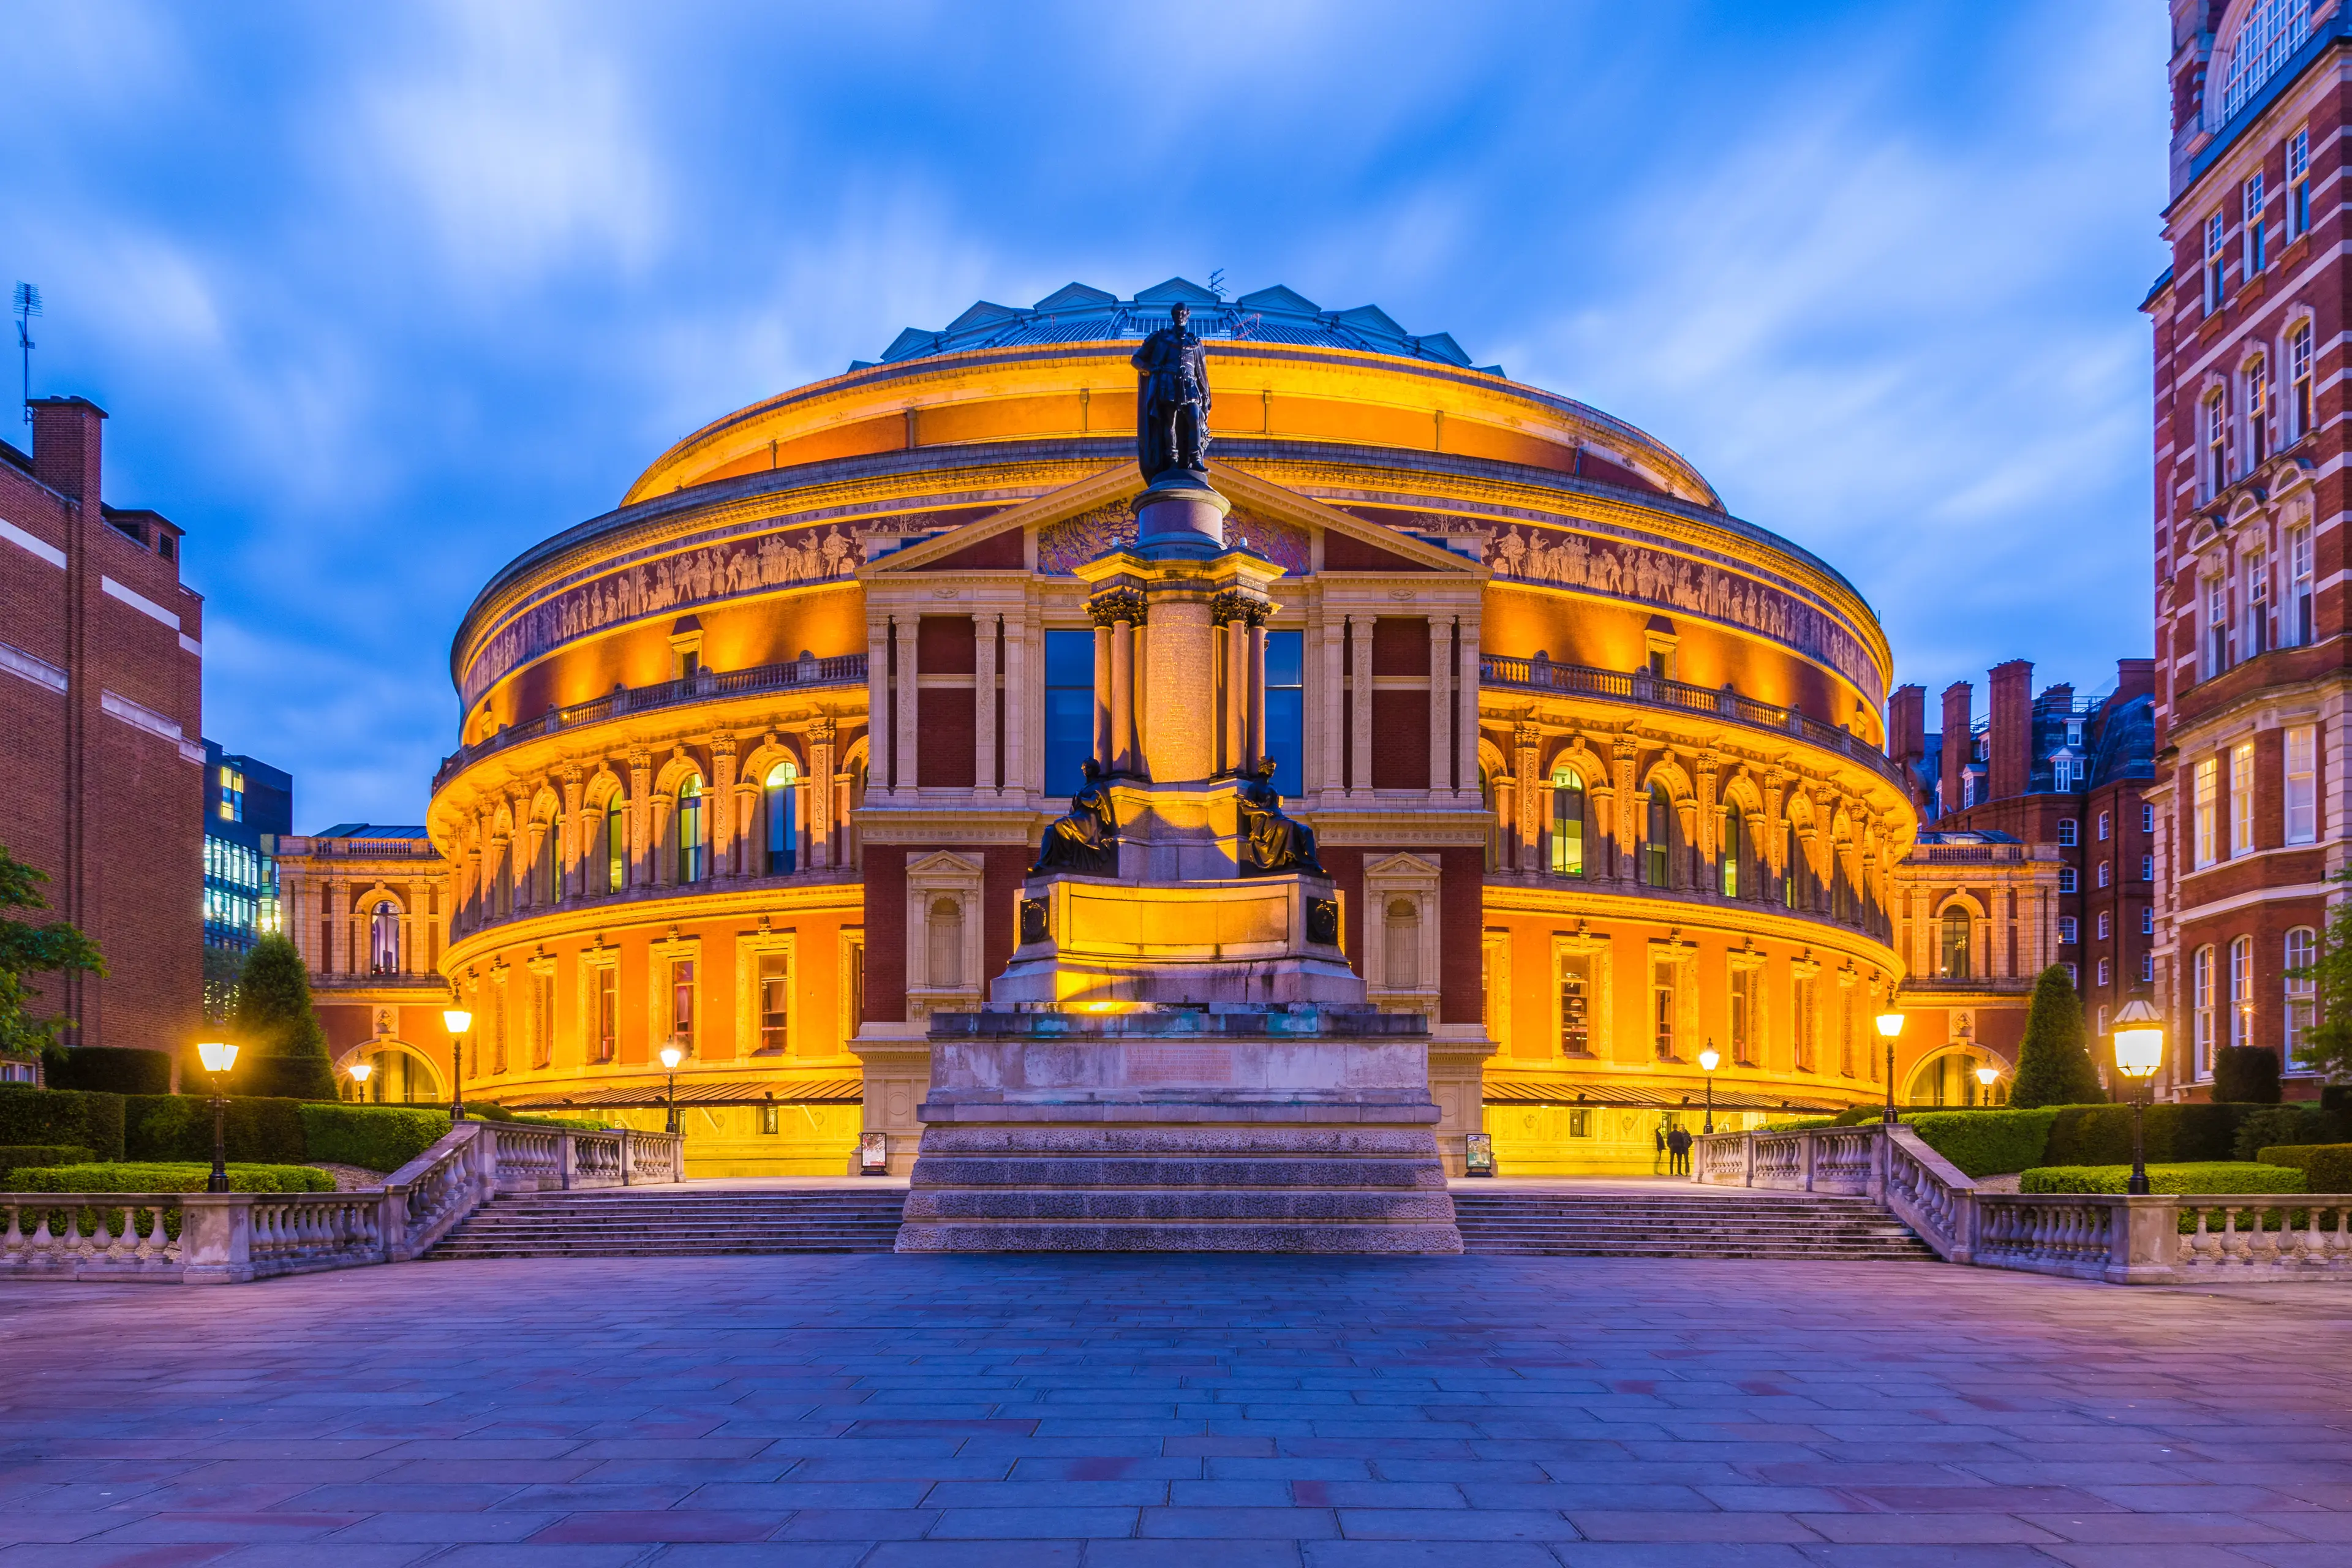 Illuminated Royal Albert Hall